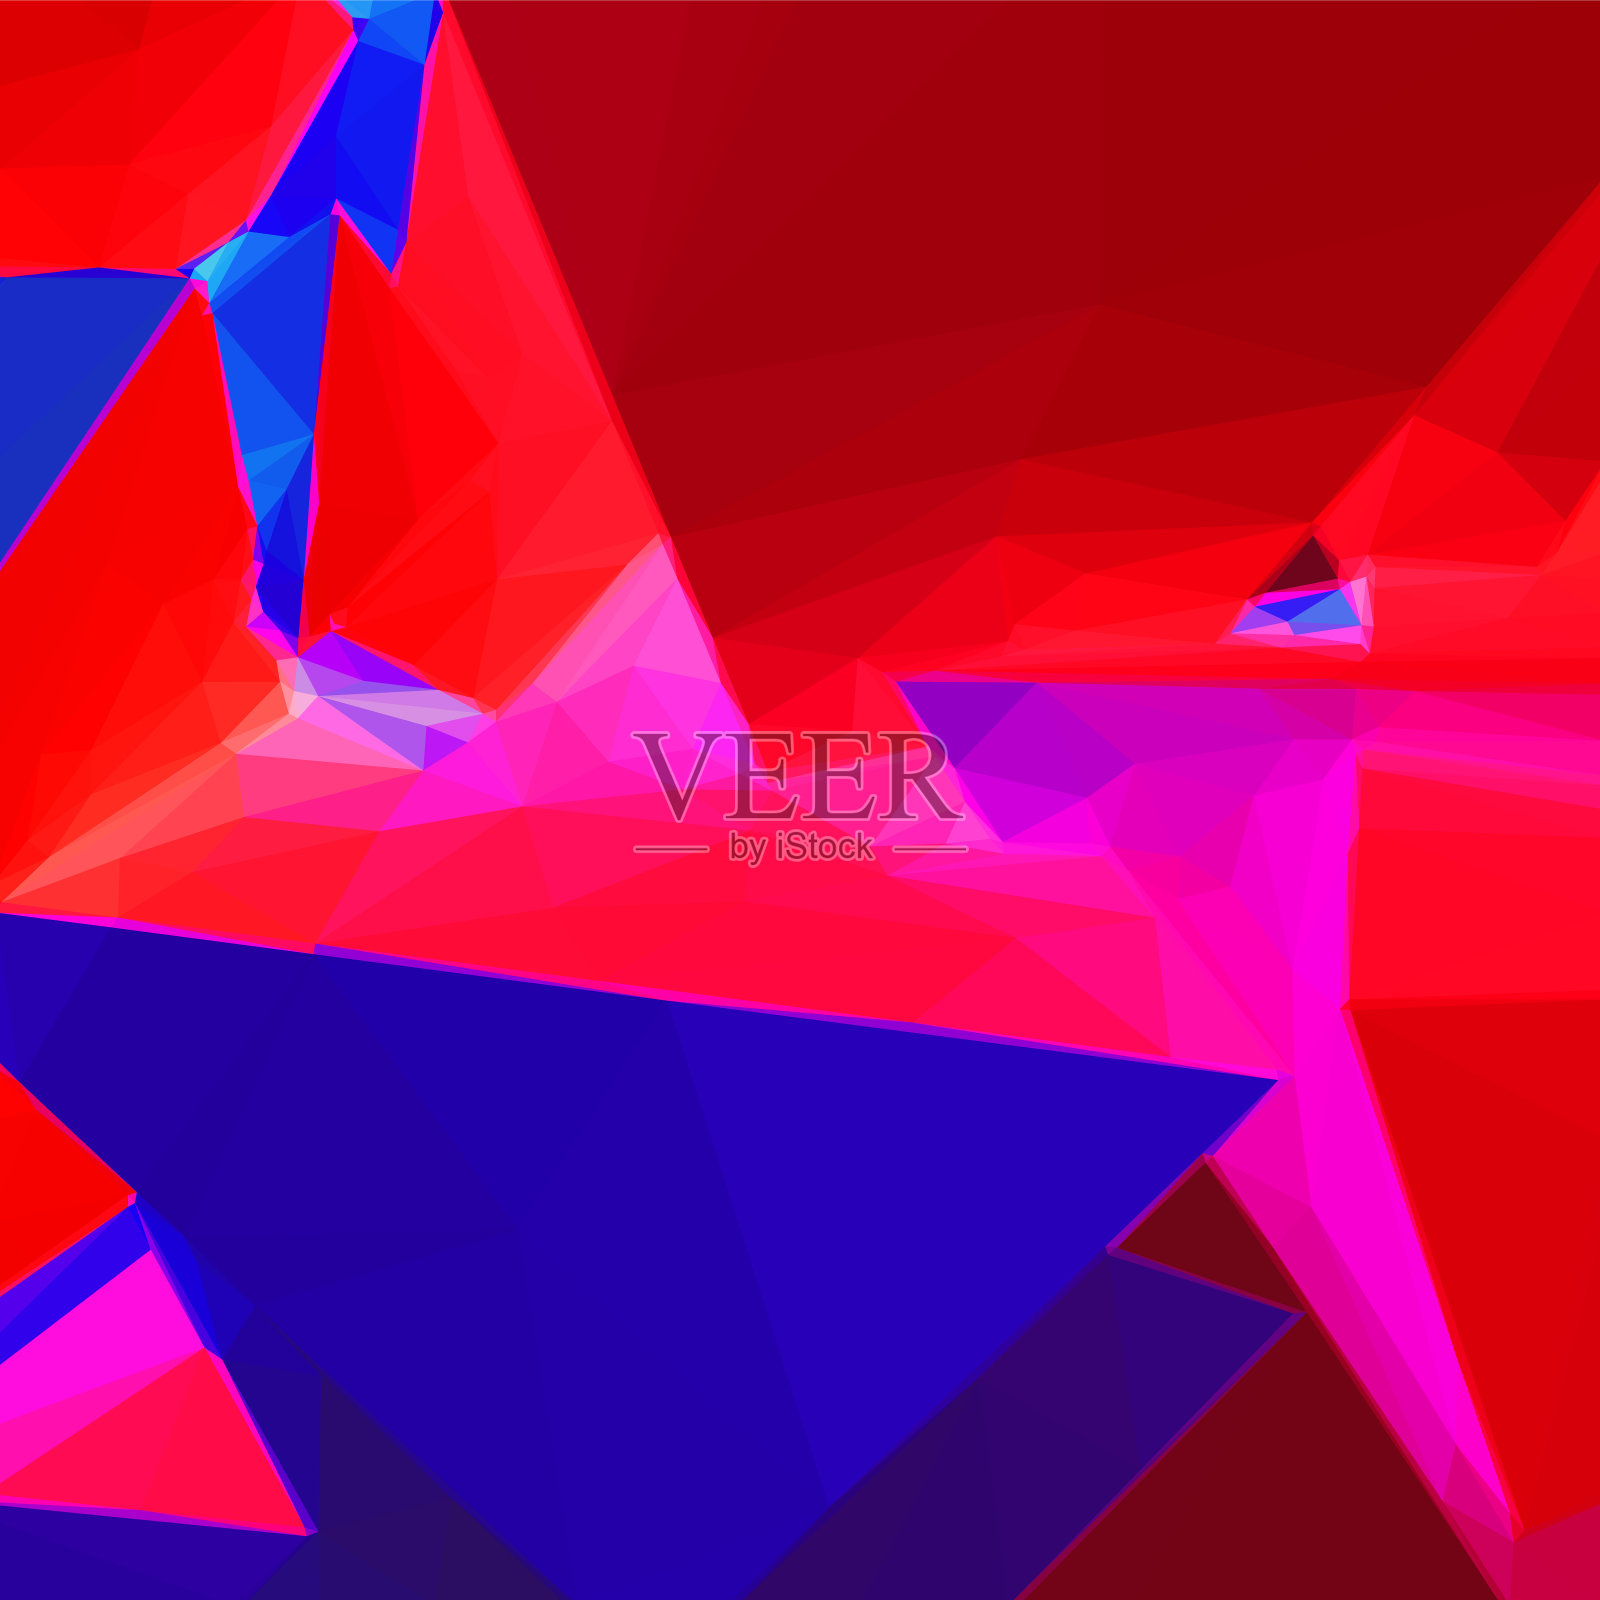 抽象矢量背景与蓝色和红色三角形形状插画图片素材